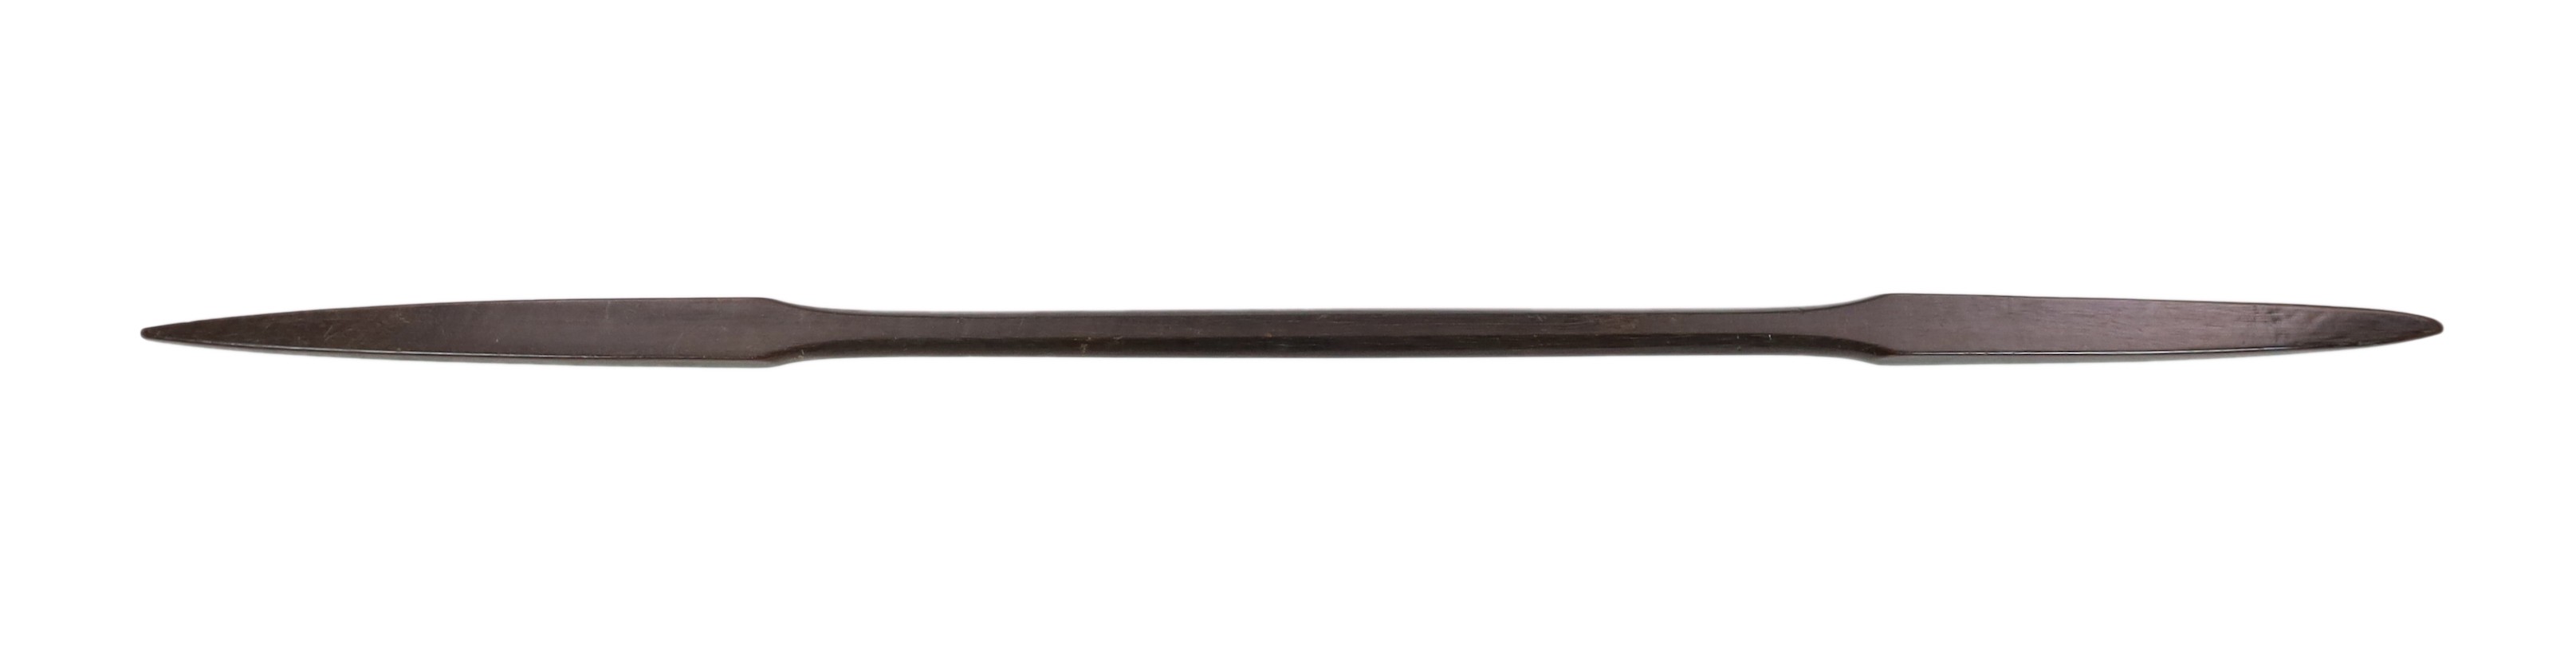 A Polynesian hardwood double ended spear, 173cm long